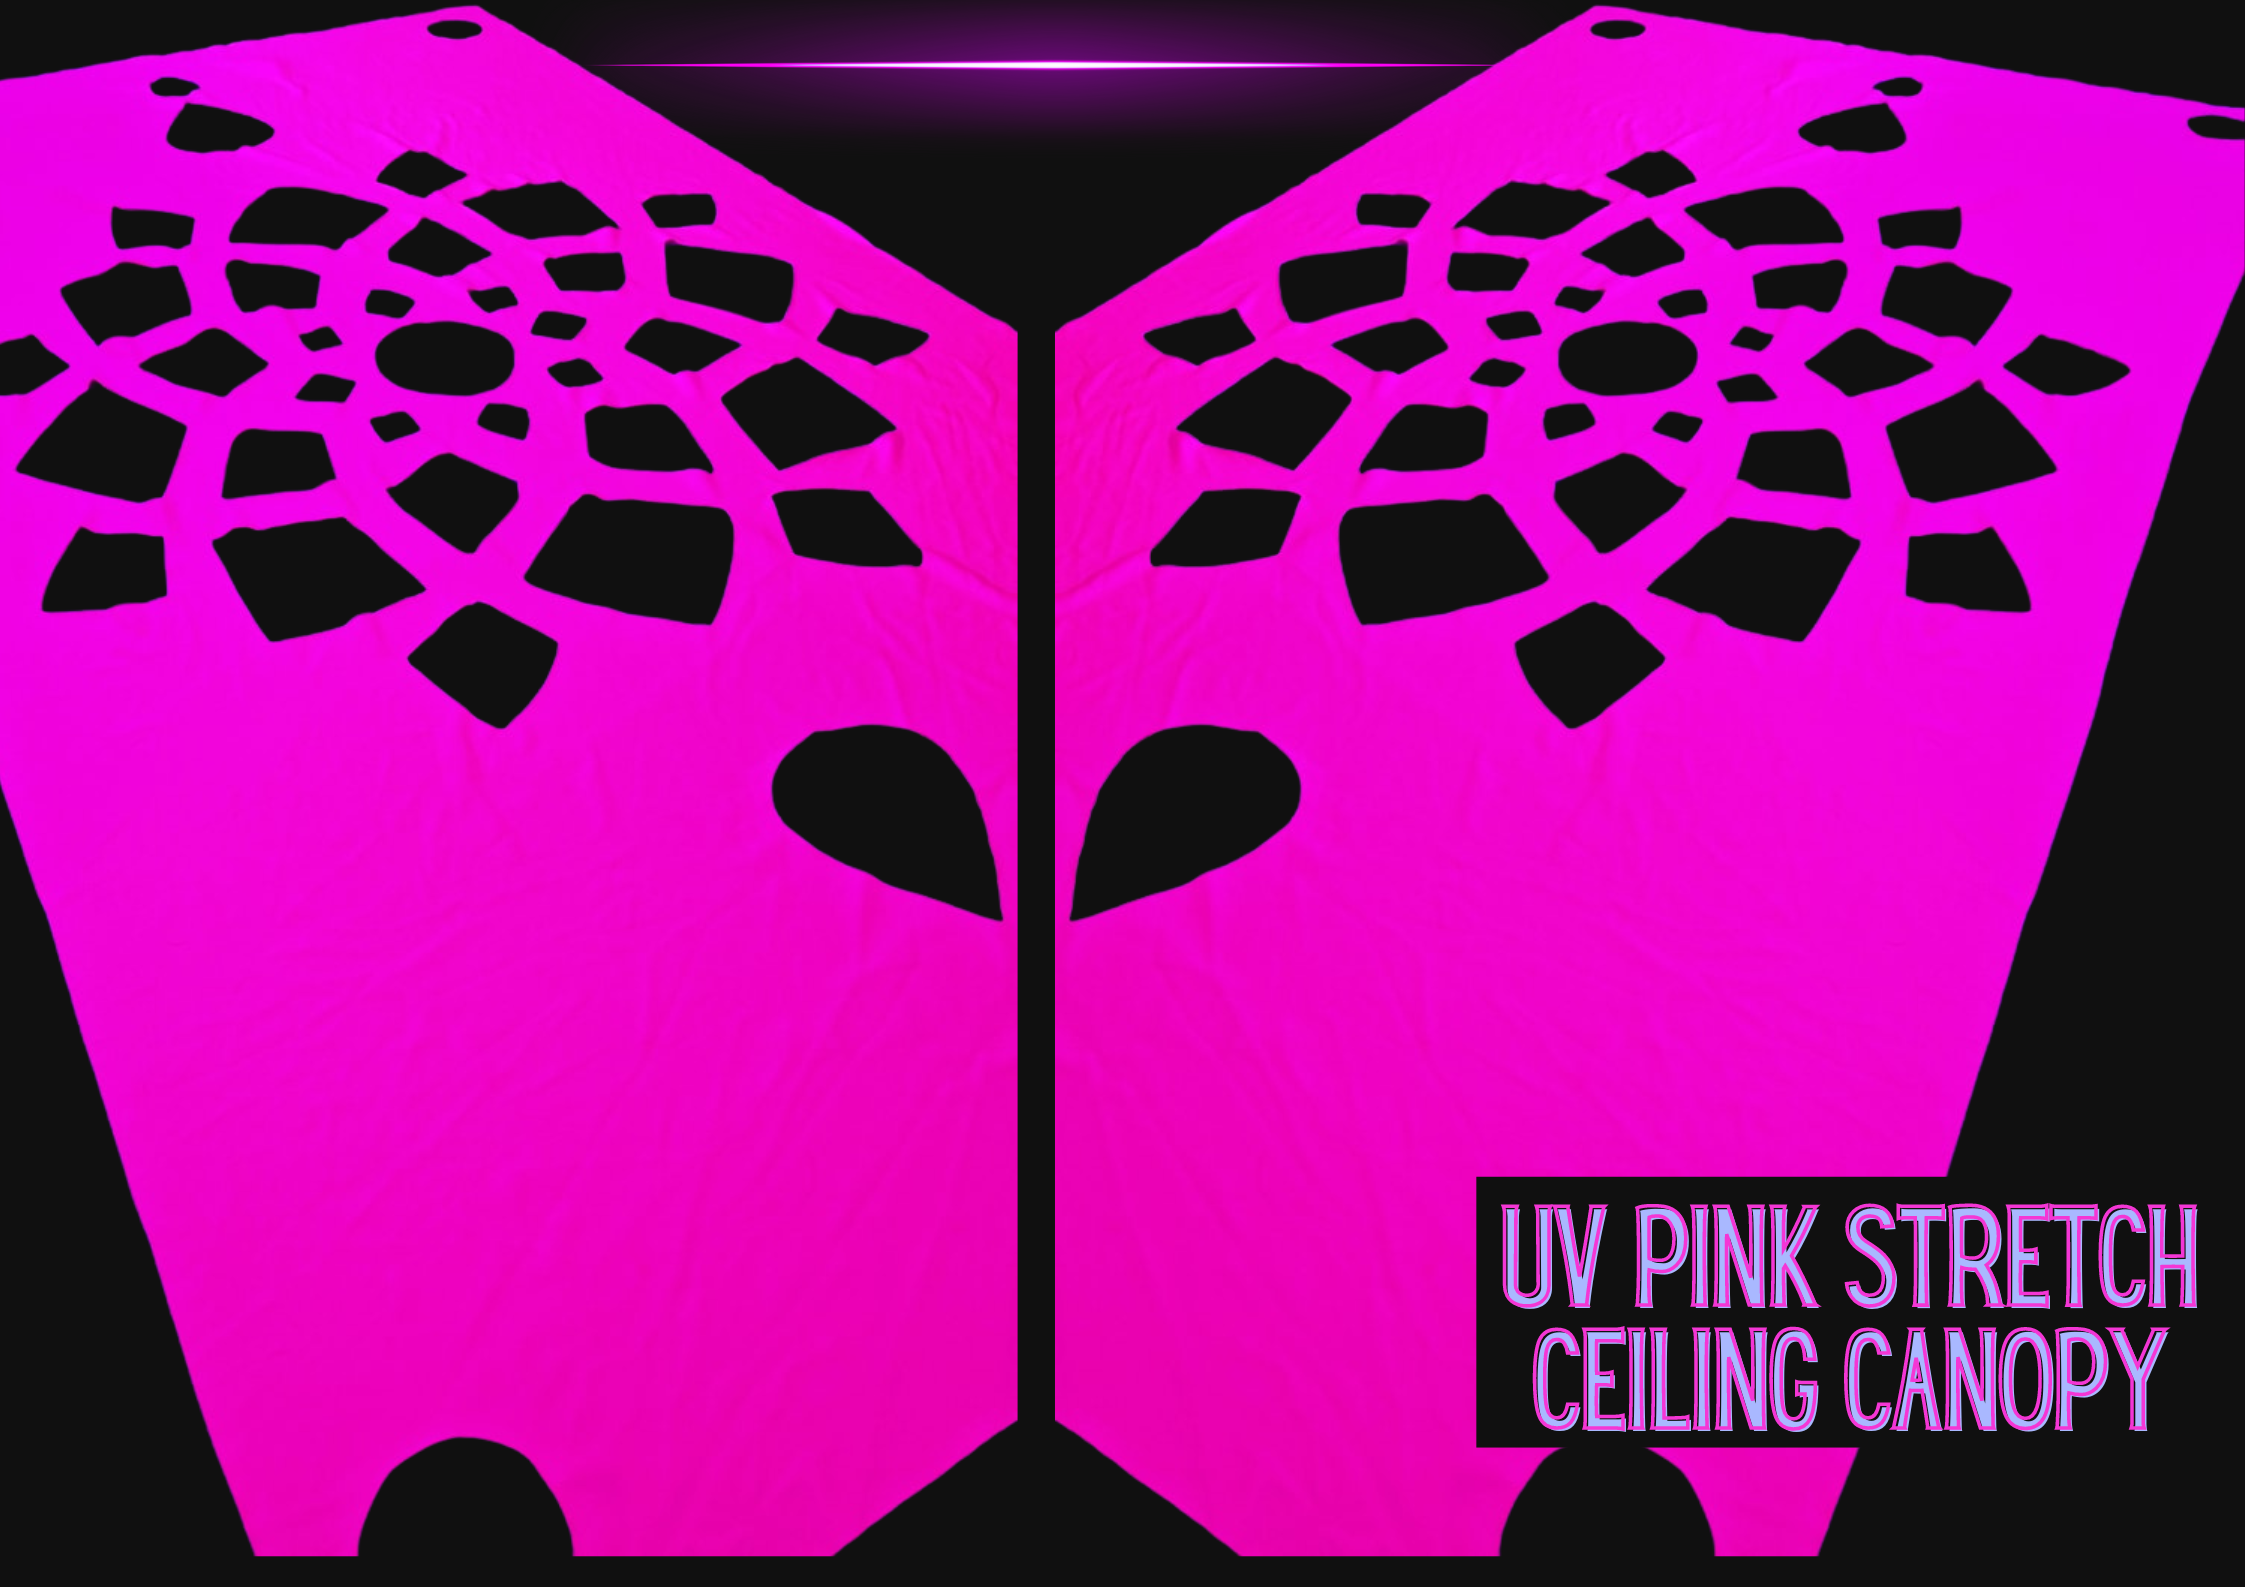 uv decor ceiling canopy decoration stretch fabric